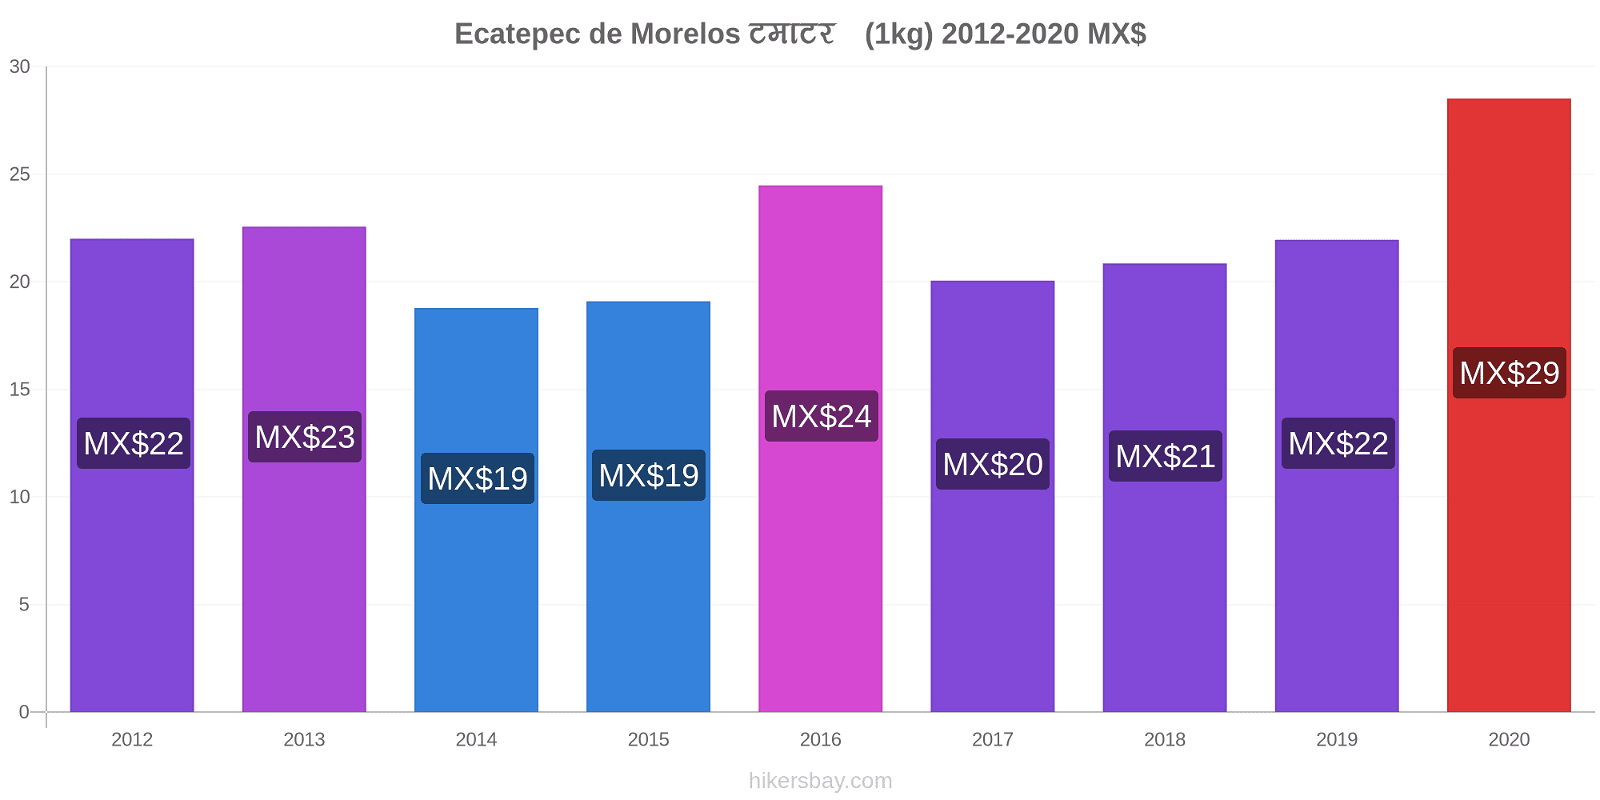 Ecatepec de Morelos मूल्य परिवर्तन टमाटर (1kg) hikersbay.com